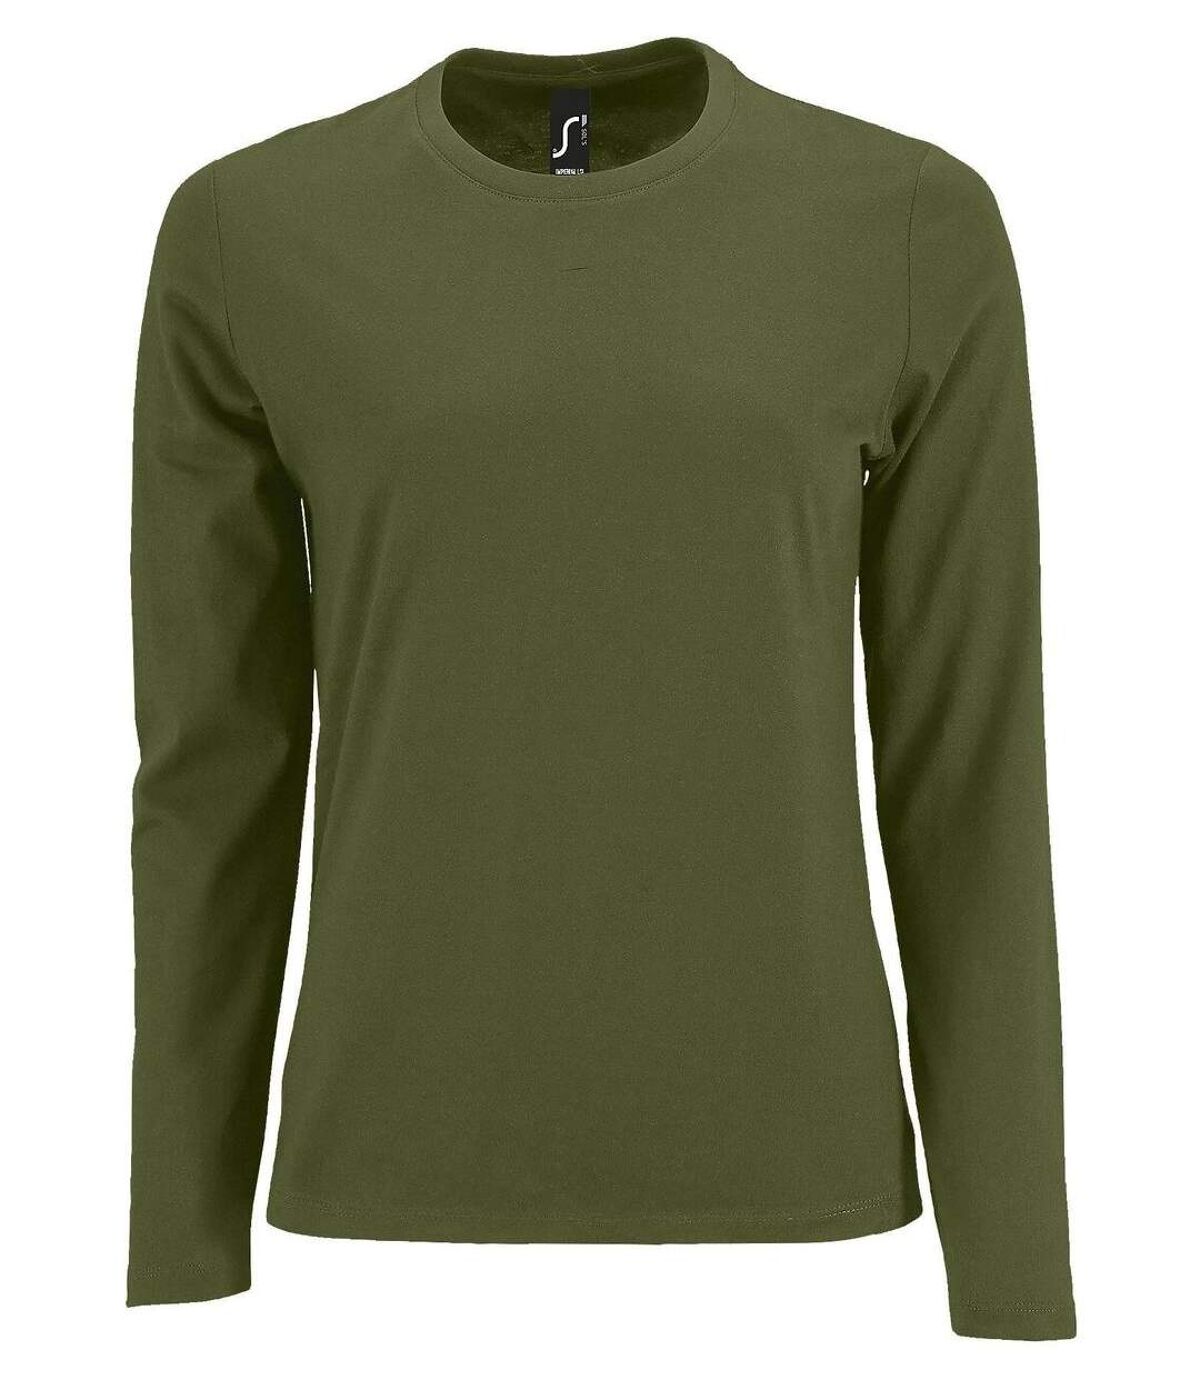 T-shirt manches longues pour femme - 02075 - vert kaki